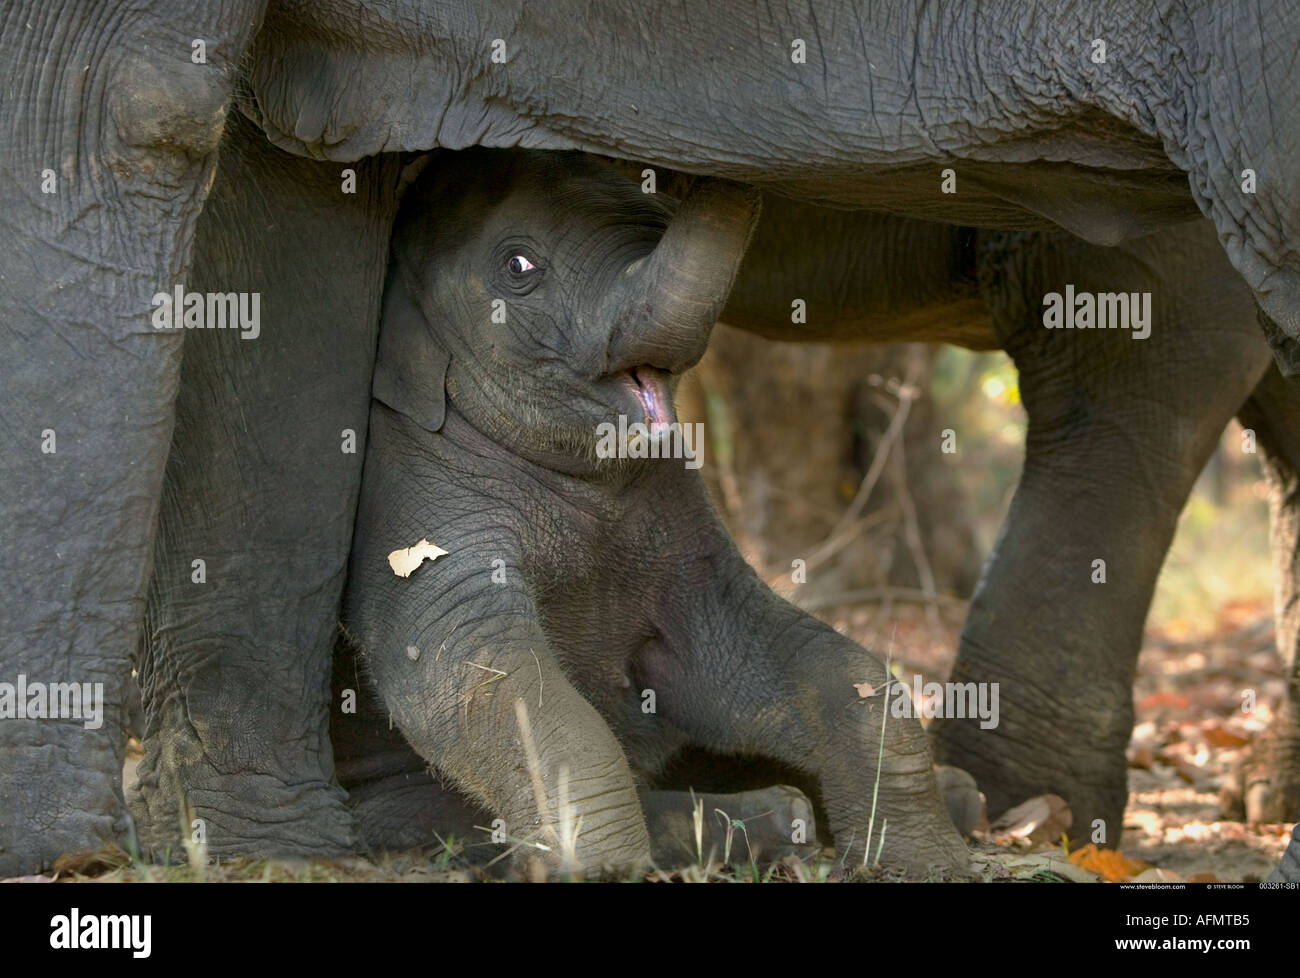 Junge indische Elefanten ruht unter seiner Mutter Bandhavgarh Indien Stockfoto